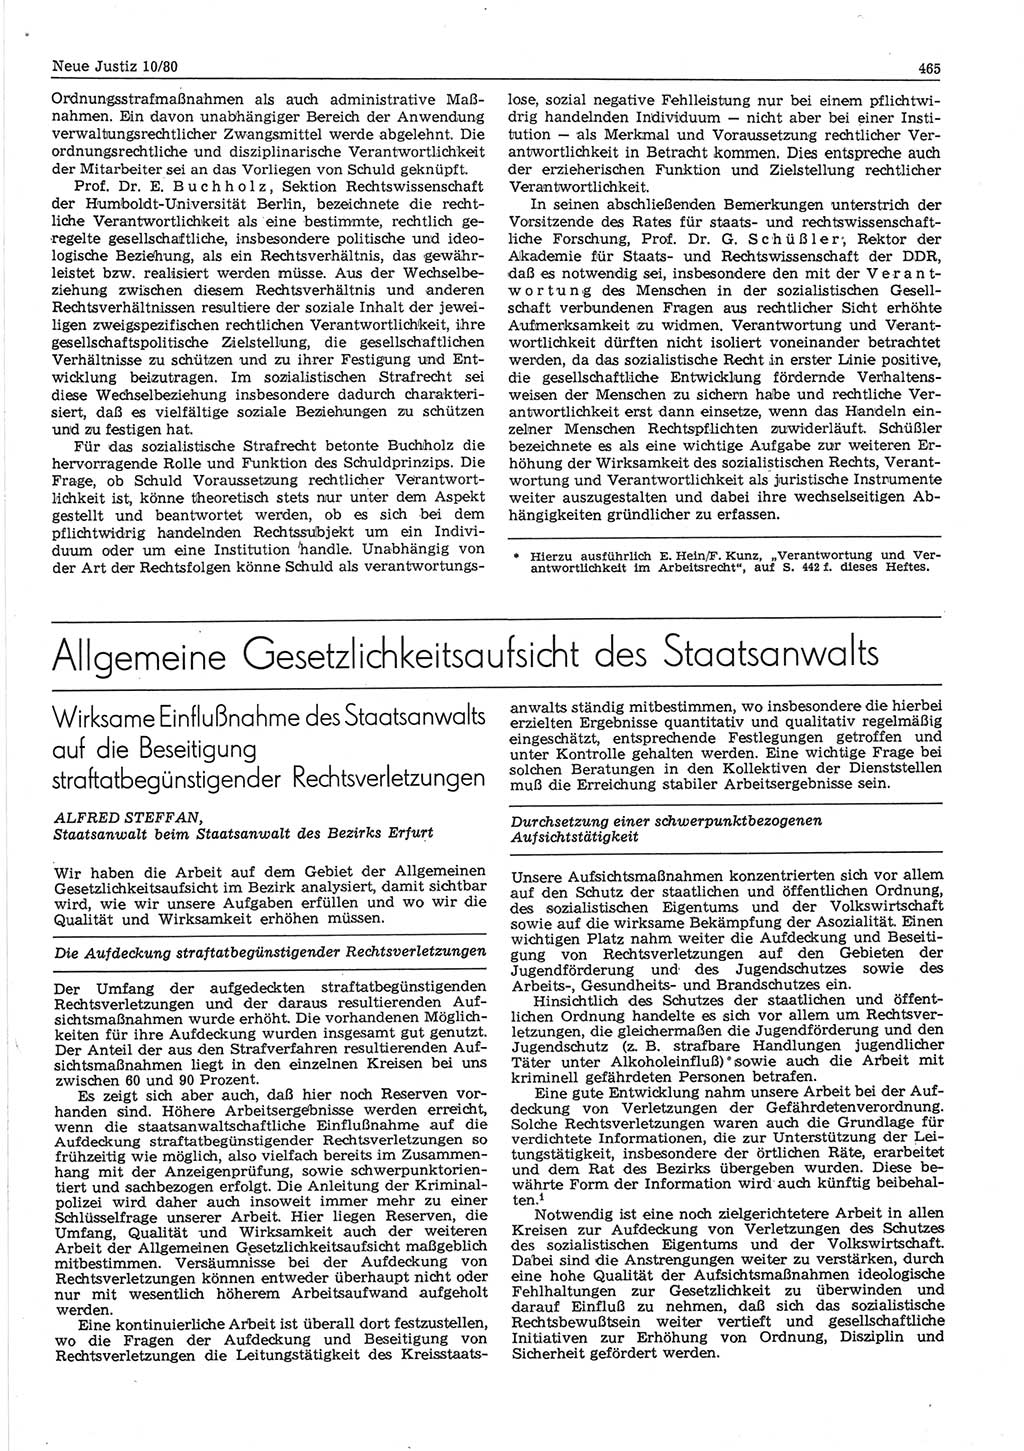 Neue Justiz (NJ), Zeitschrift für sozialistisches Recht und Gesetzlichkeit [Deutsche Demokratische Republik (DDR)], 34. Jahrgang 1980, Seite 465 (NJ DDR 1980, S. 465)